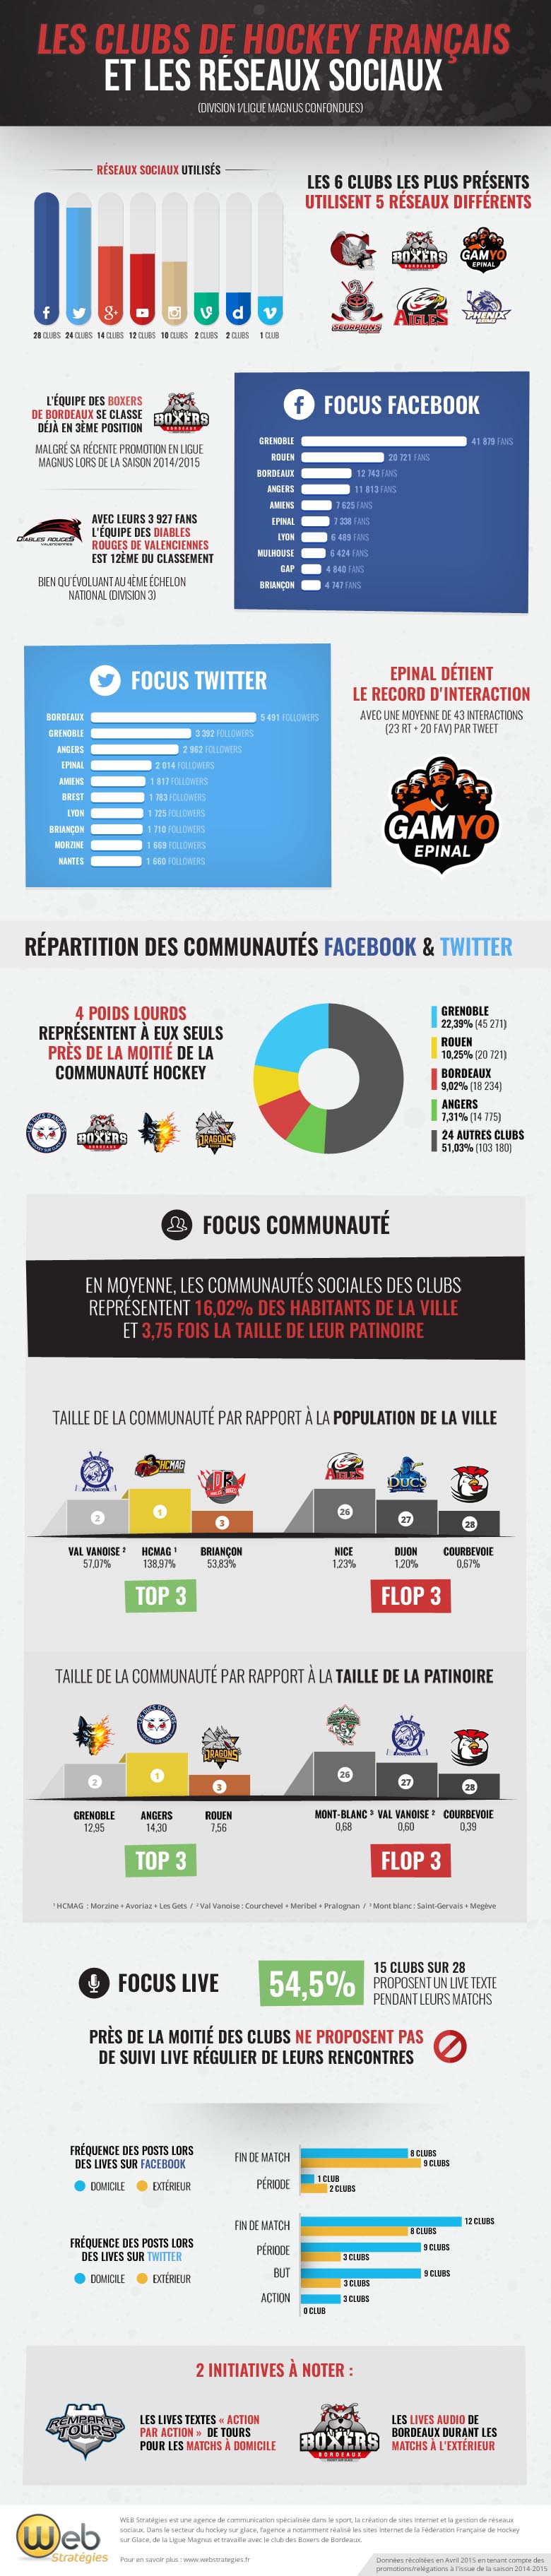 infographie clubs de hockey français sur le digital facebook twitter